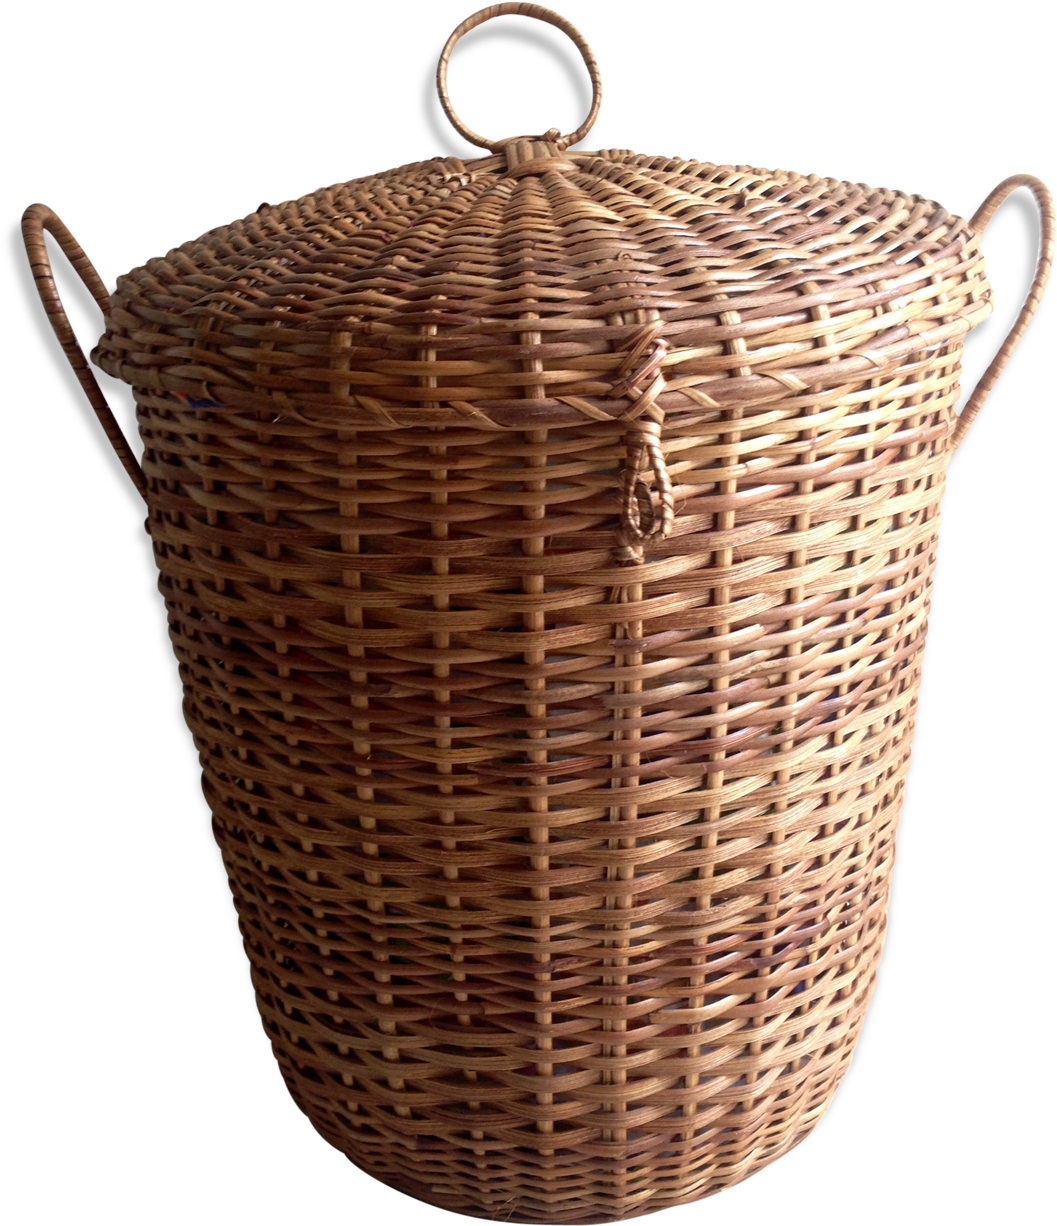 Vintage Wicker Laundry Basket - Wicker (1457x1457), Png Download